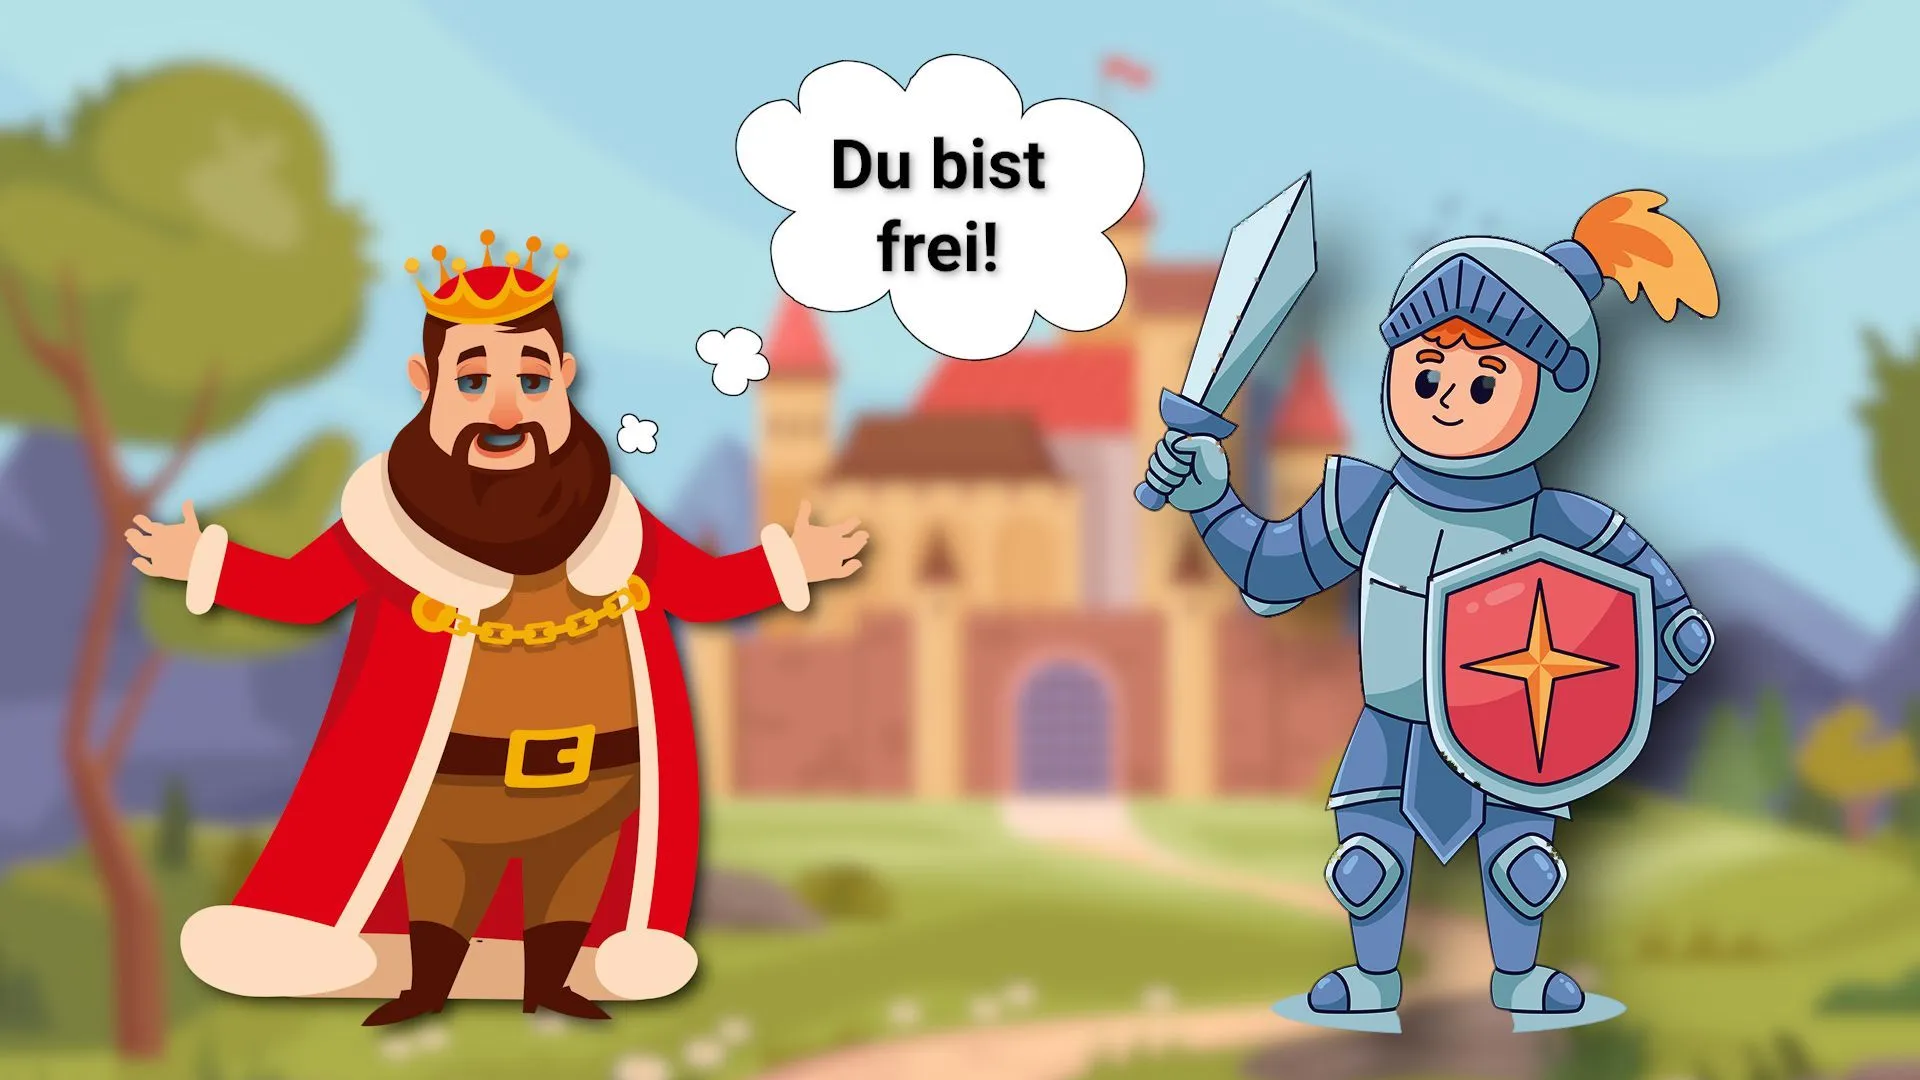 Logikrätsel: Was sagt der Ritter zum König?